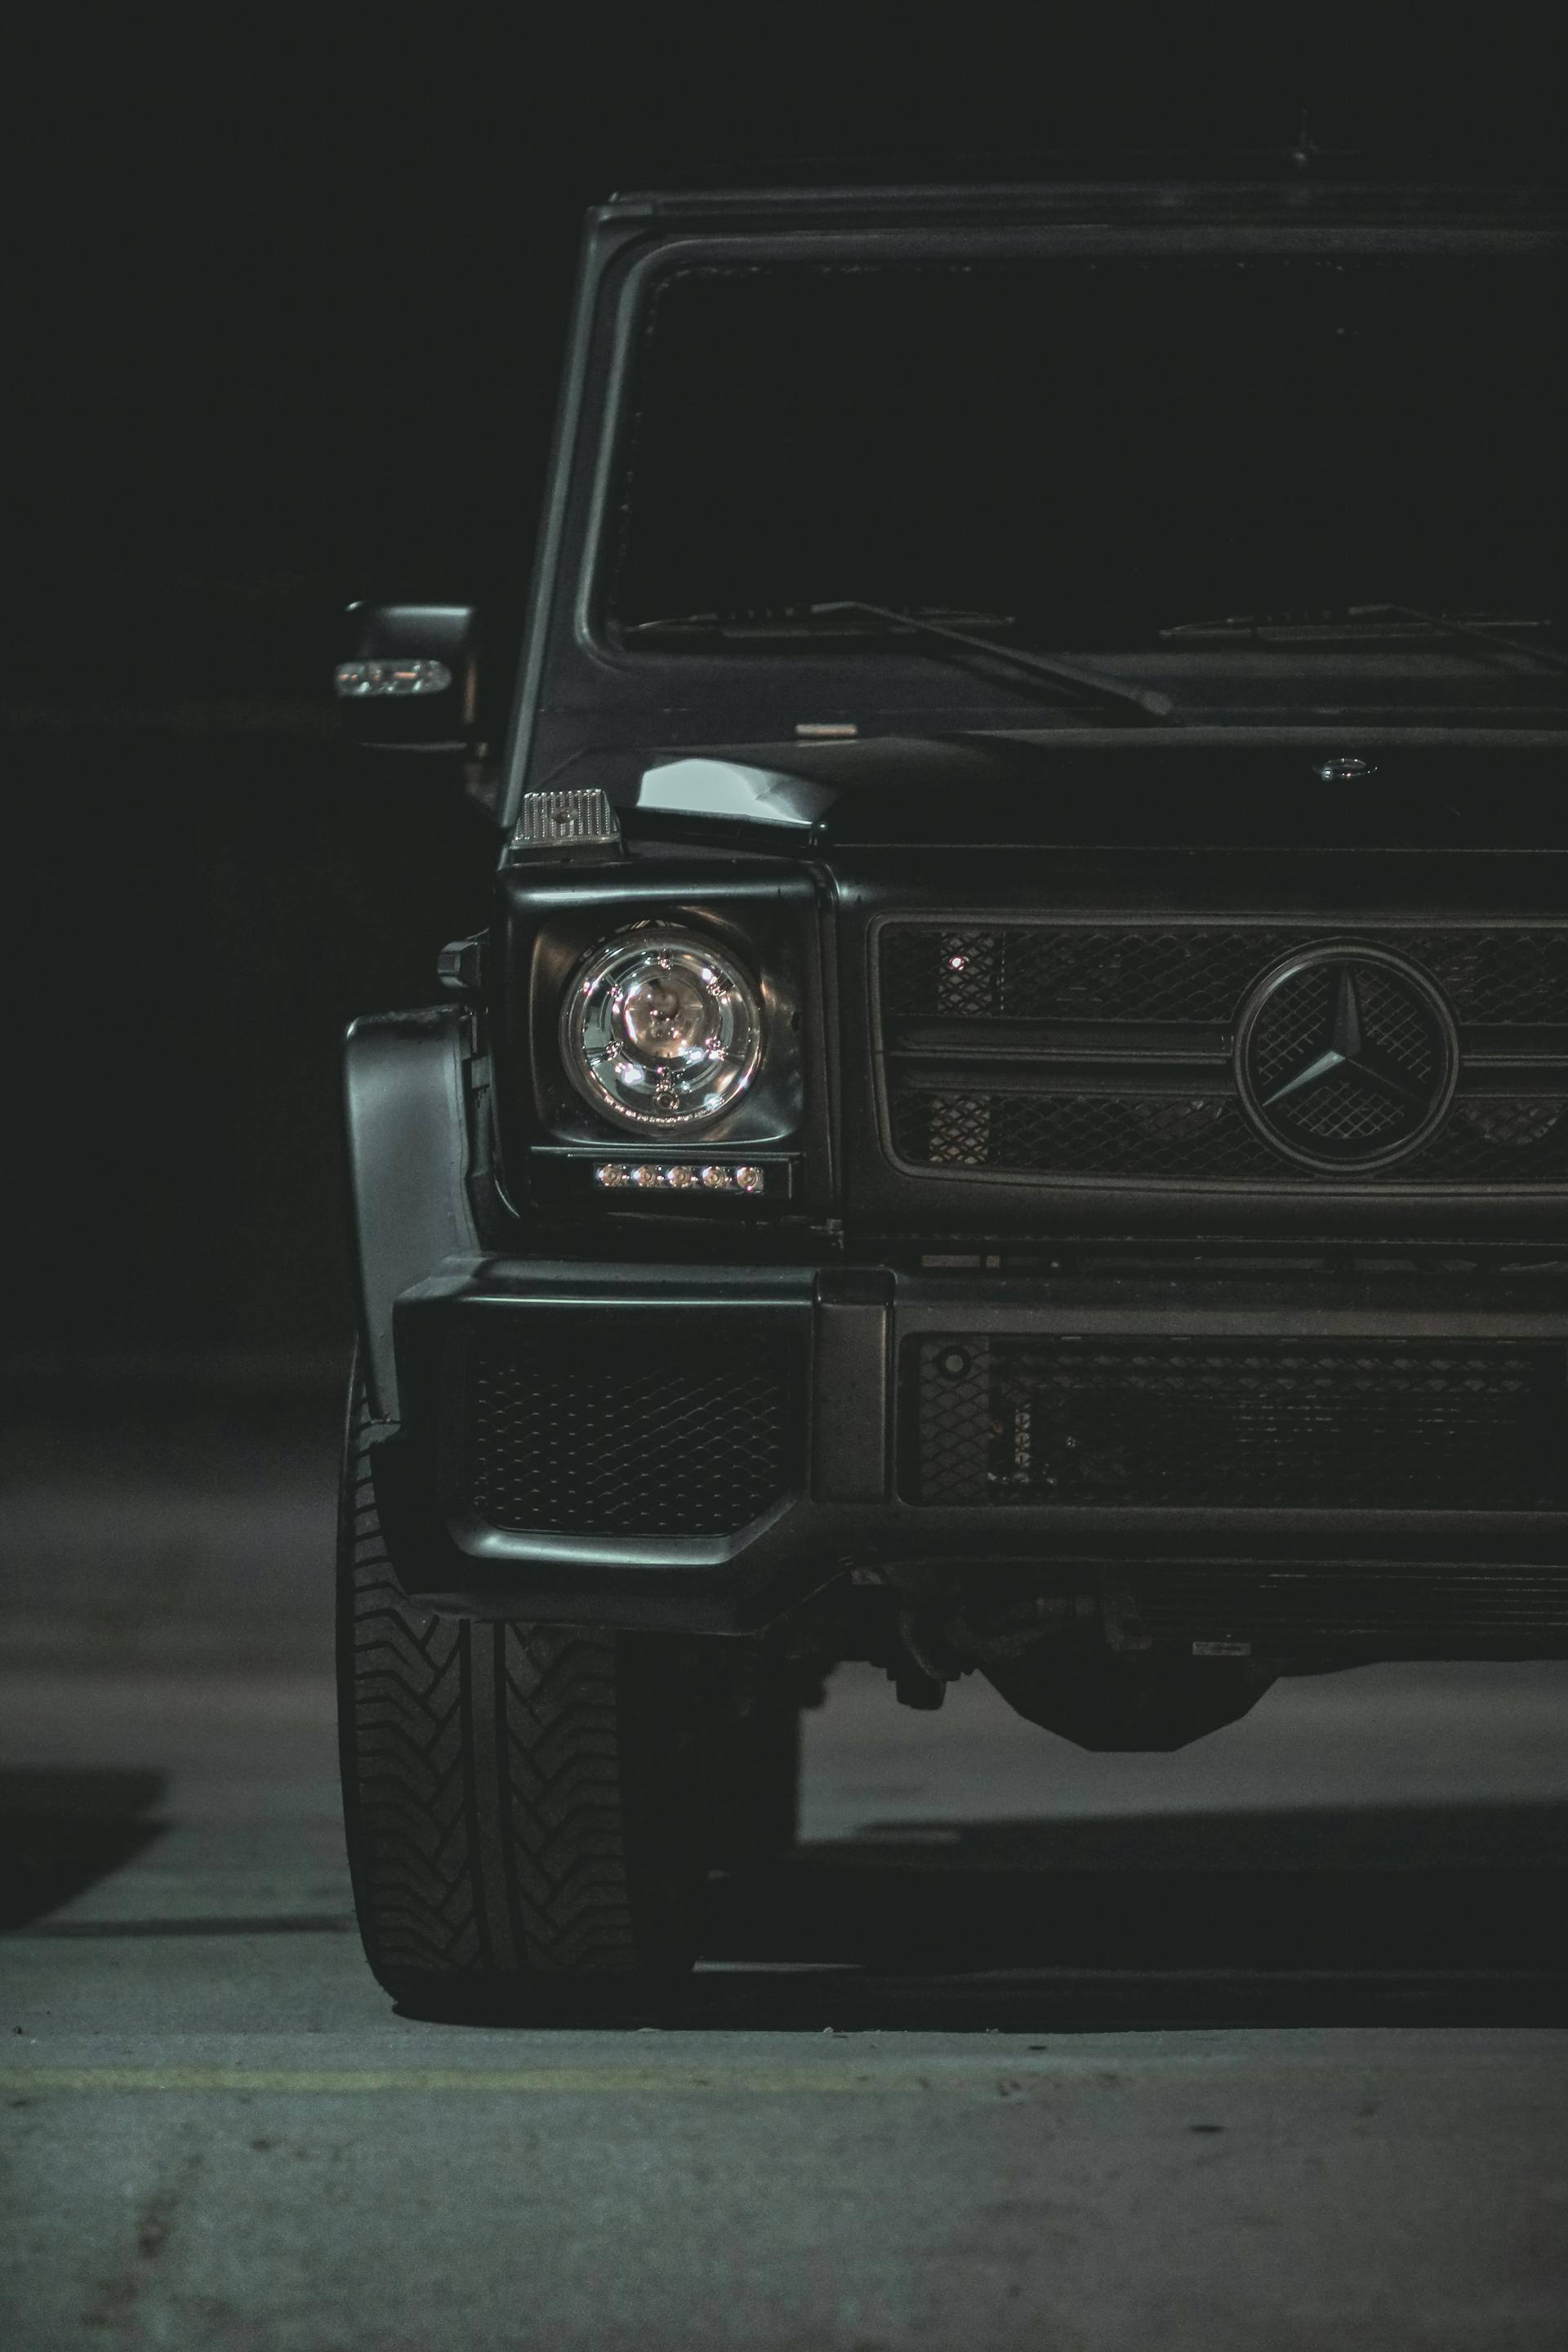 A black Mercedes-Benz | Source: Pexels